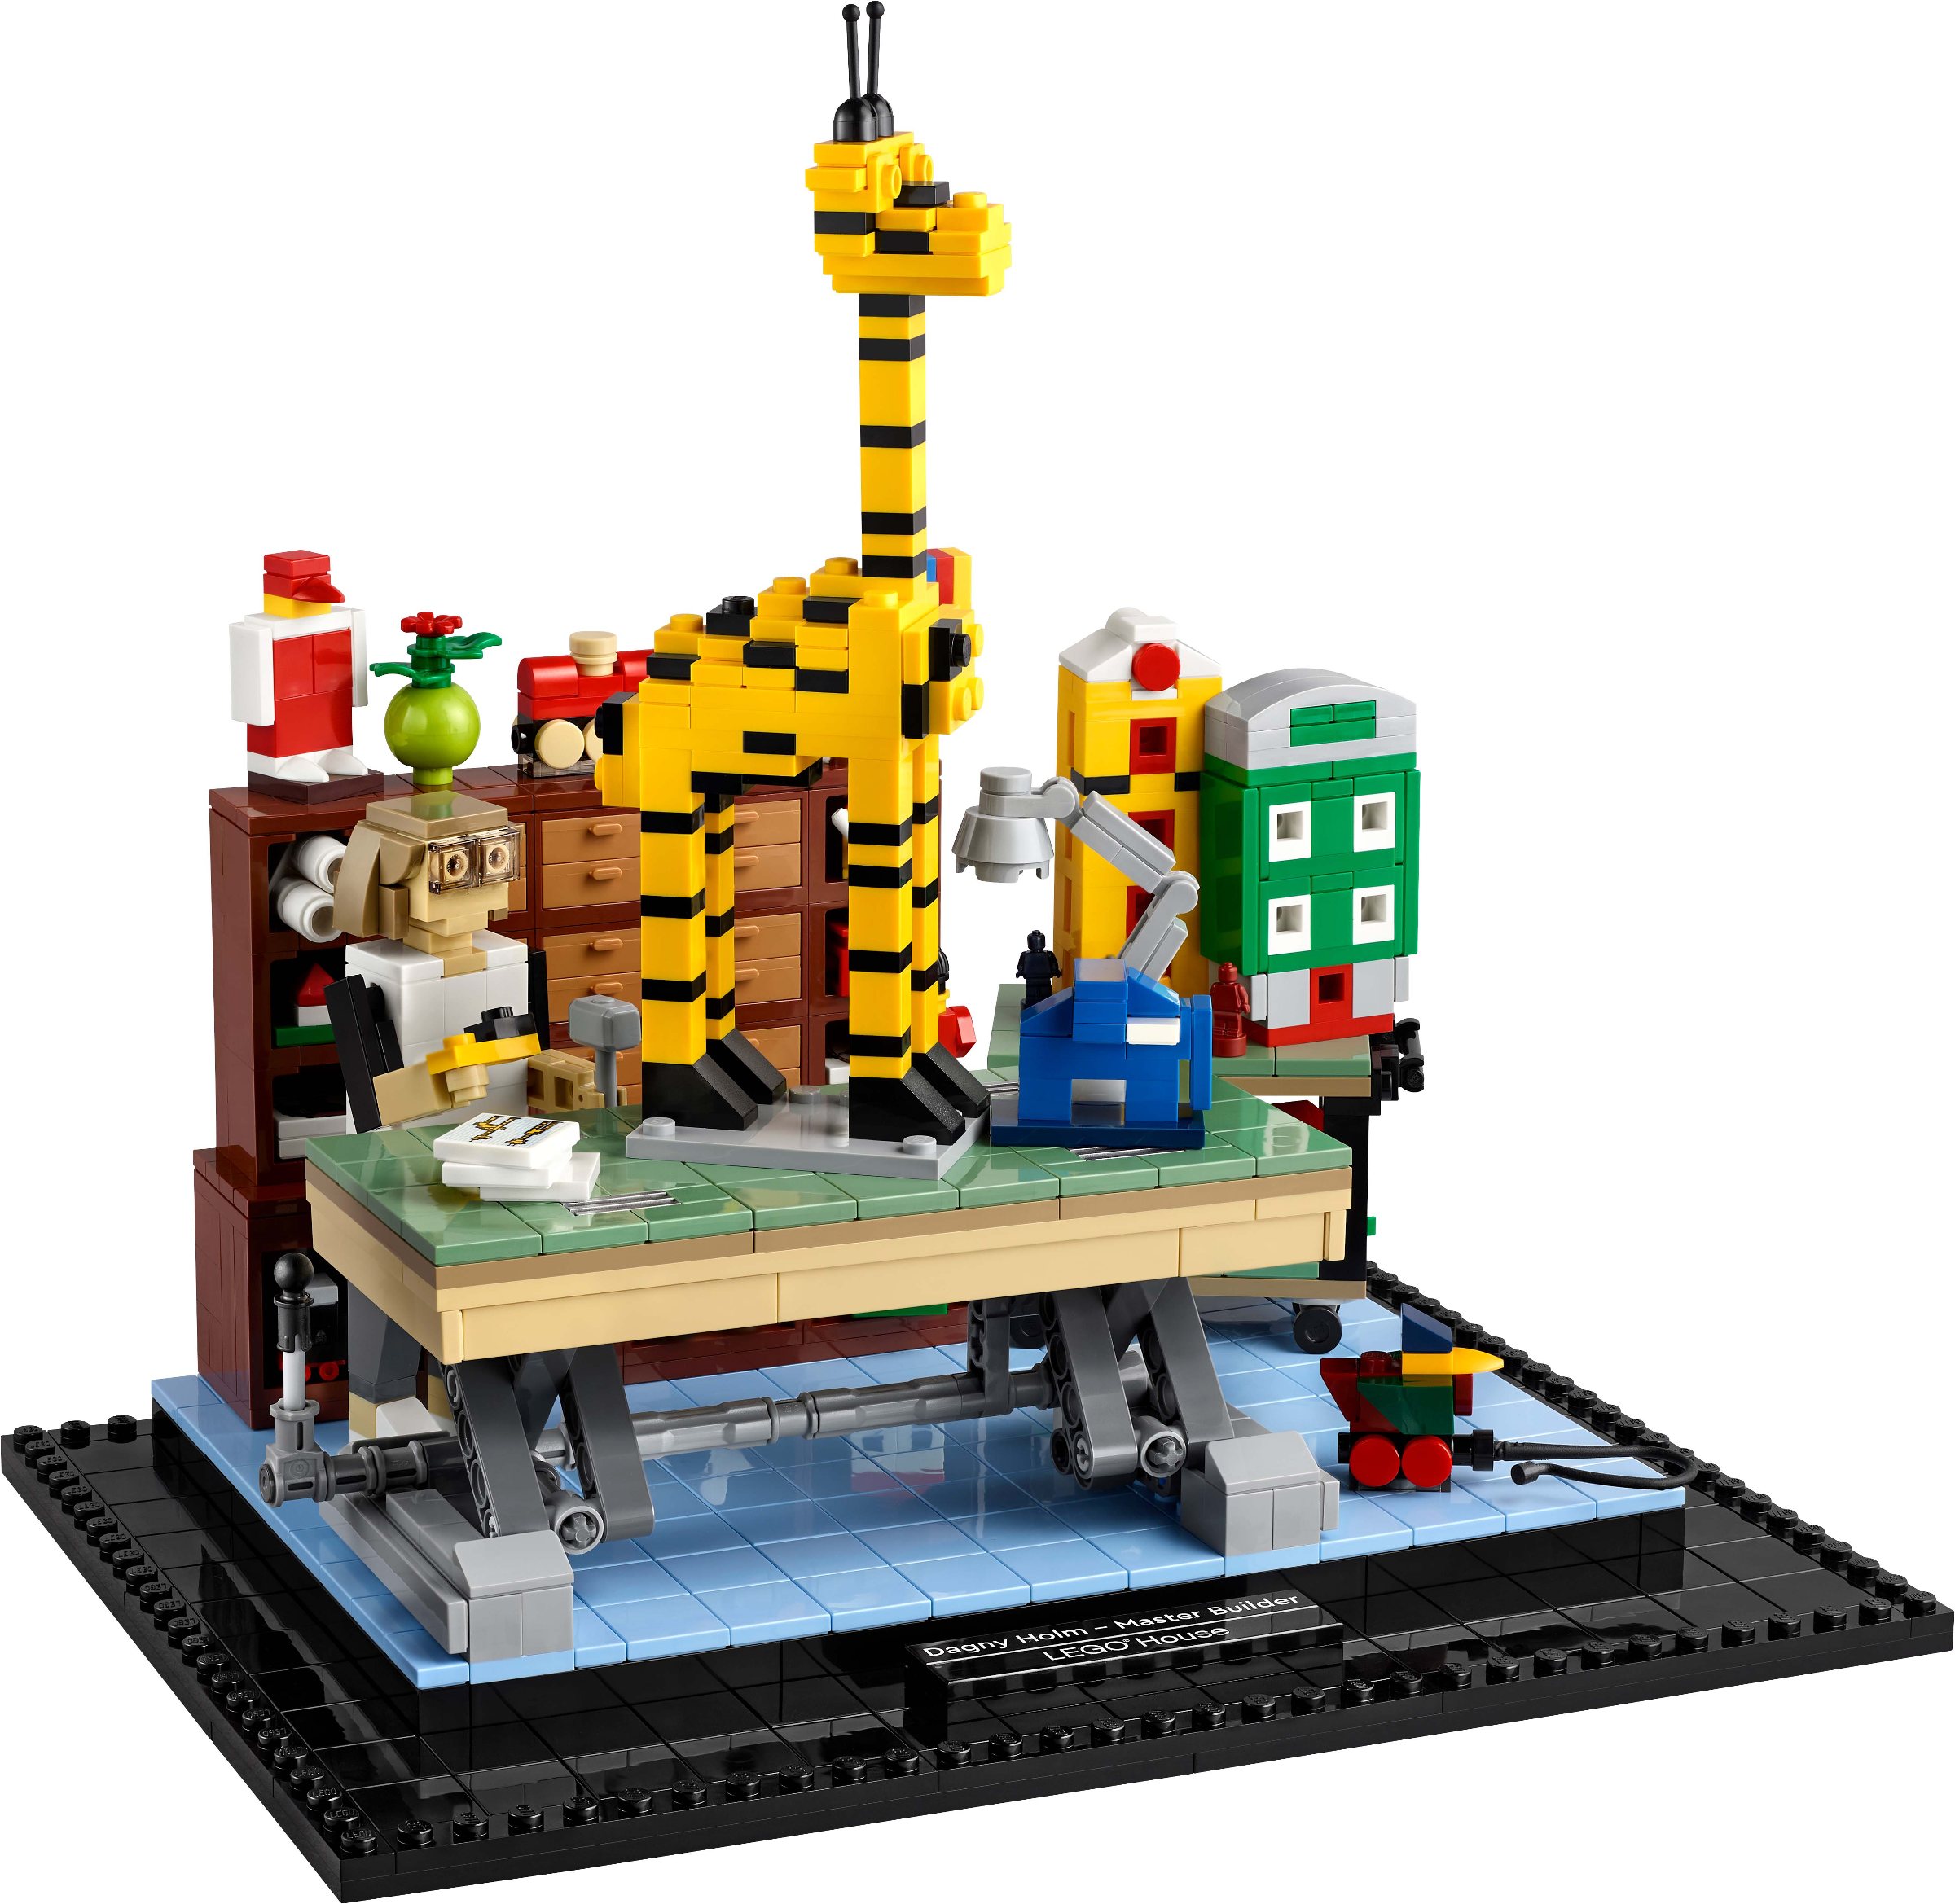 New LEGO exclusive set revealed | Brickset